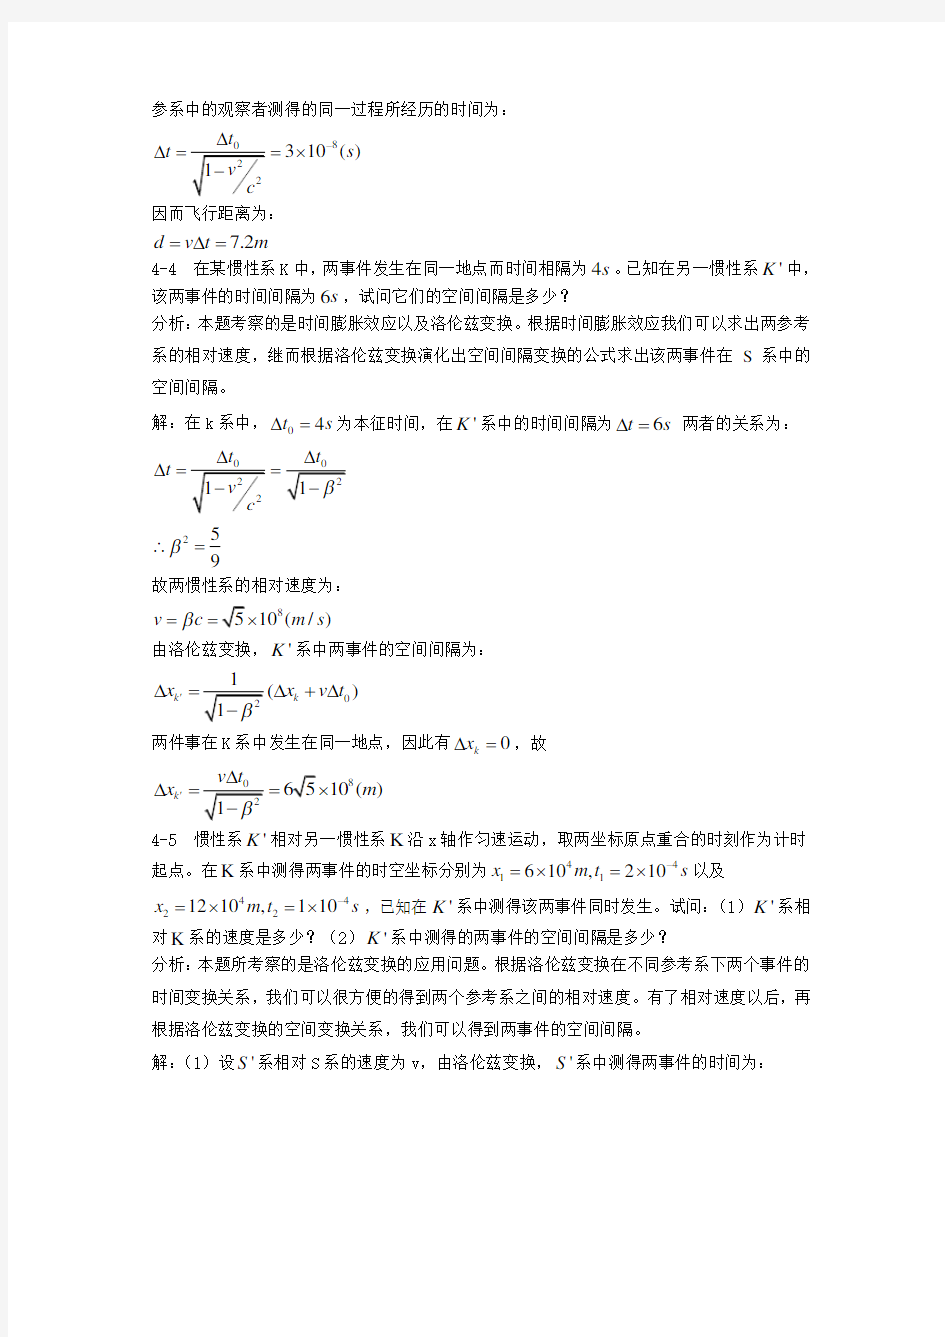 基础物理学上册第四章习题解答和分析